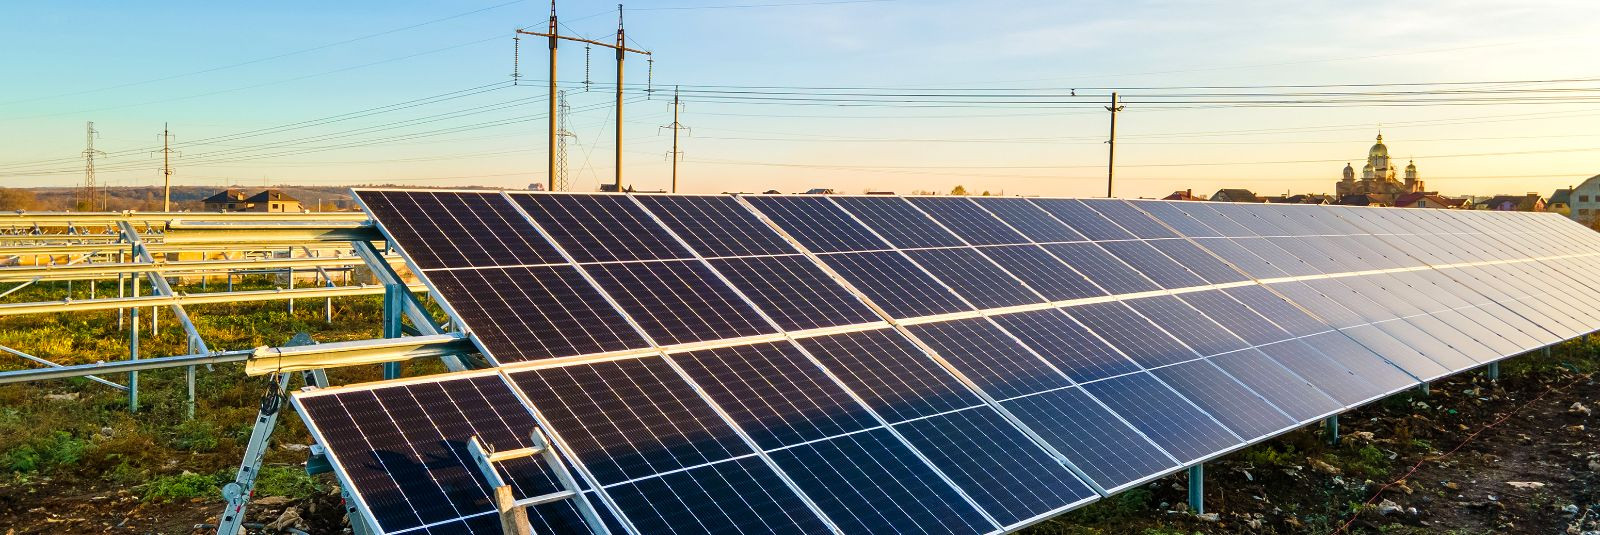 Päikesepaneelid on kujunenud tänapäeval üheks kõige kõnelevamaks teemaks energia valdkonnas ning põhjusega. Need innovatiivsed tehnoloogilised imed mitte ainult